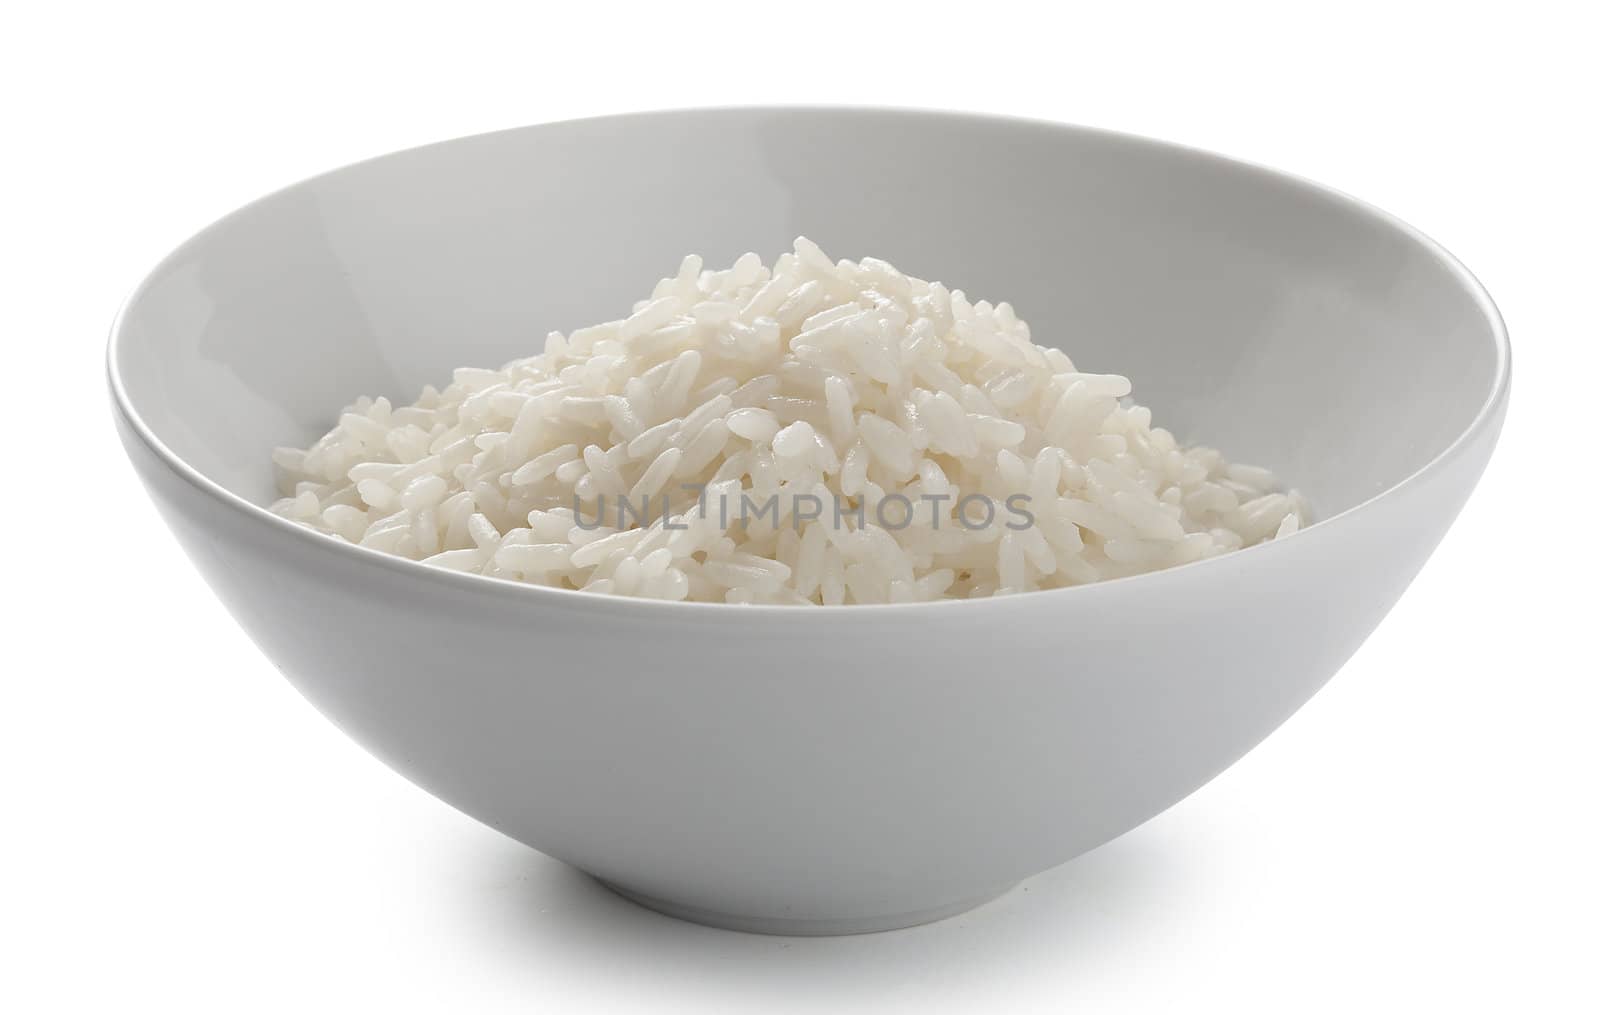 Cream of rise in the white ceramic bowl